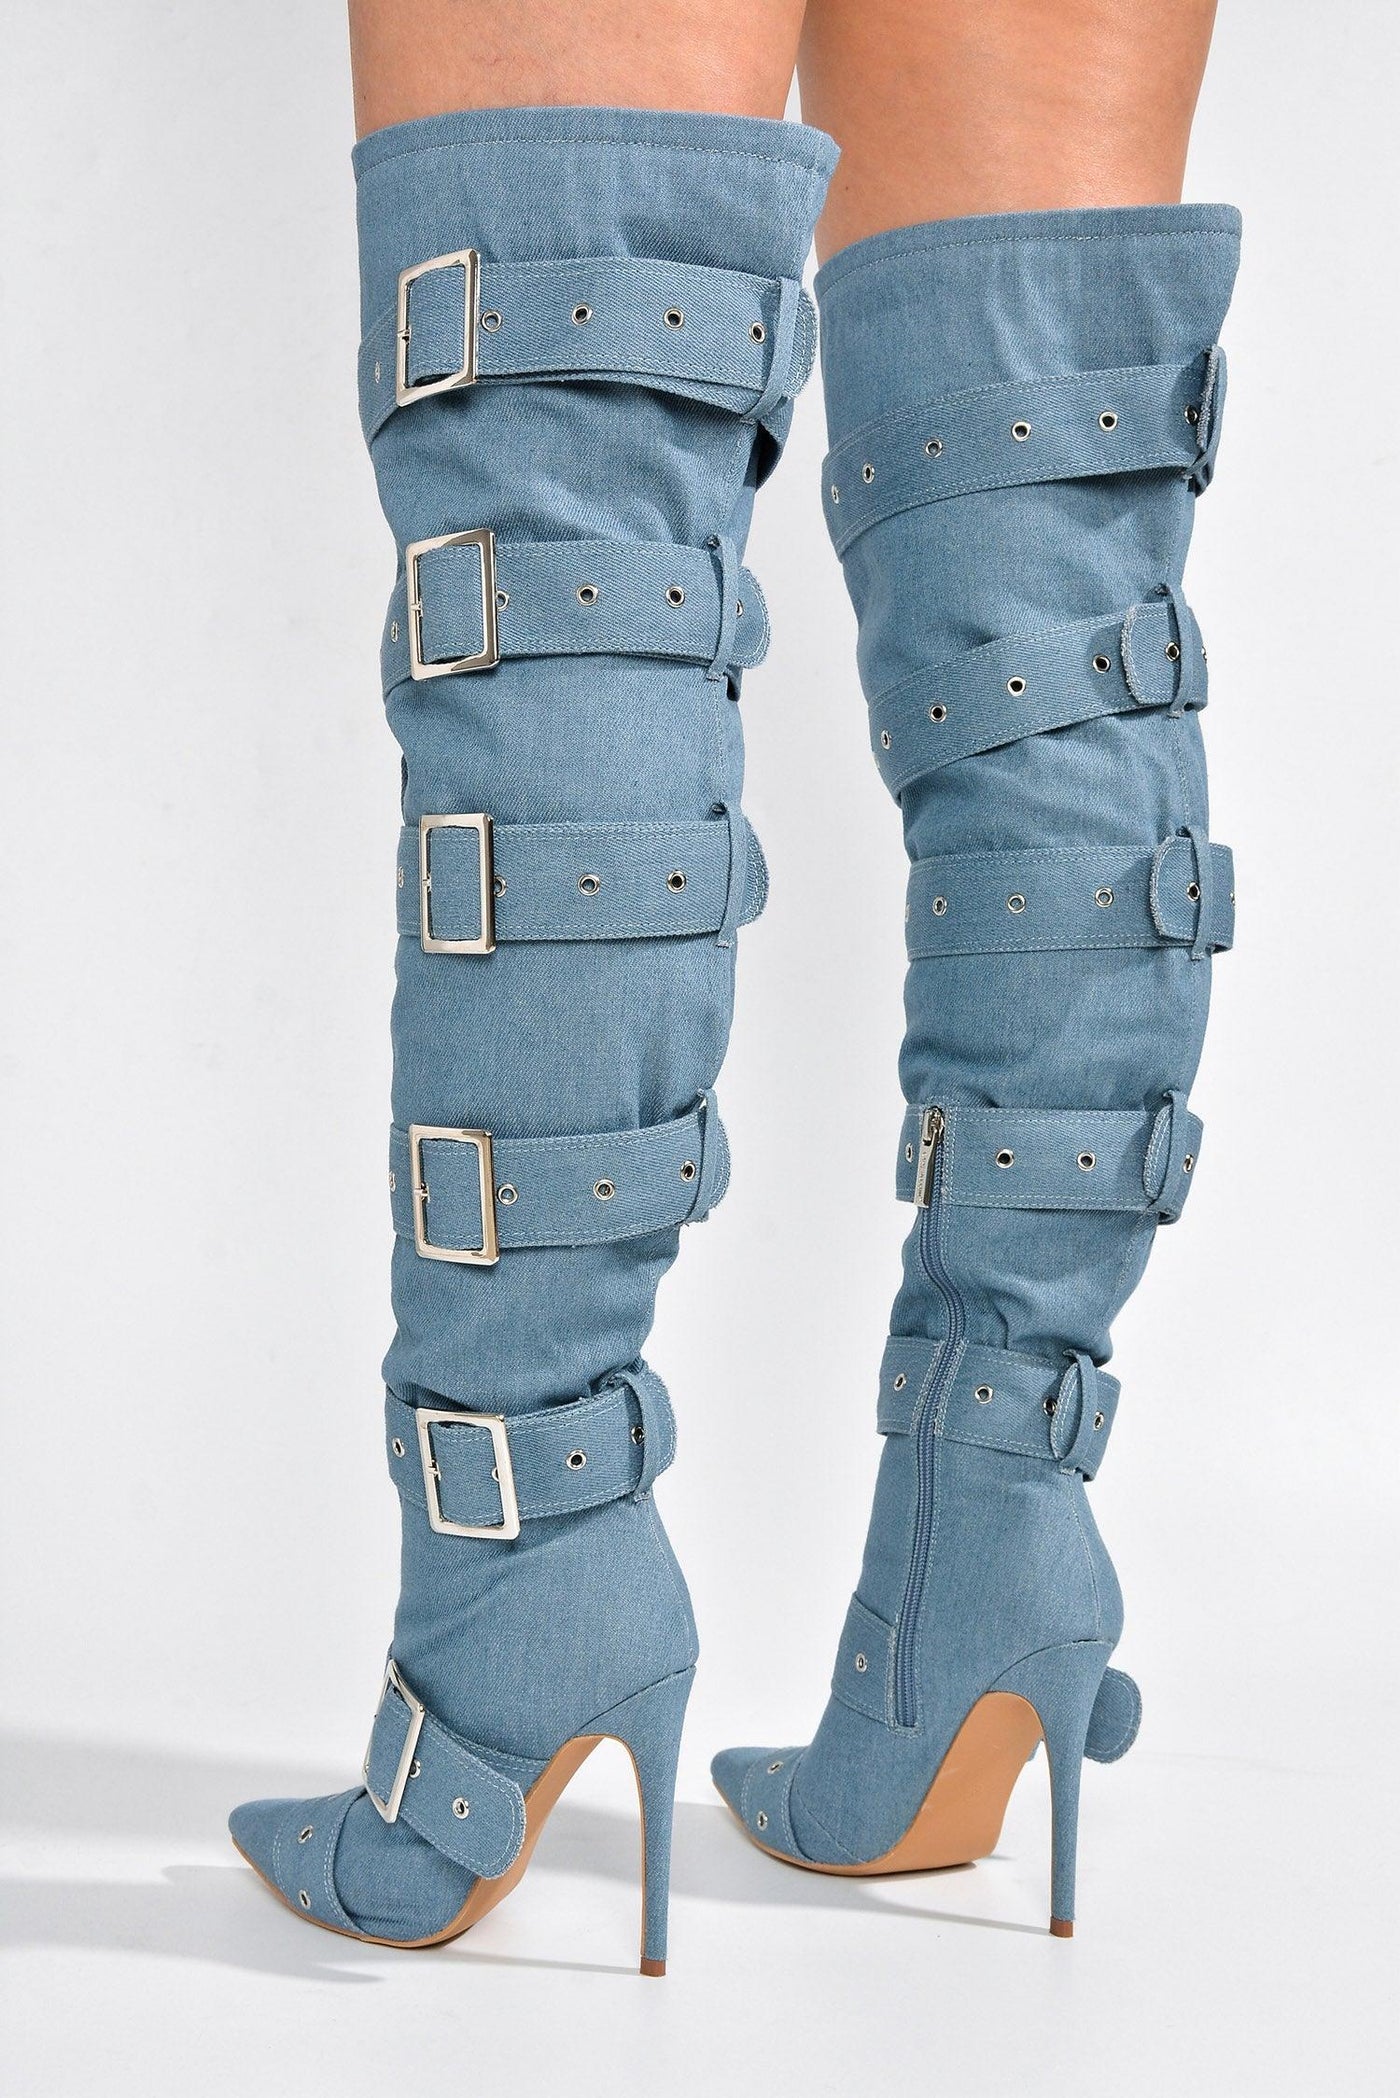 ASMARA - DENIM Thigh High Boots - AMIClubwear